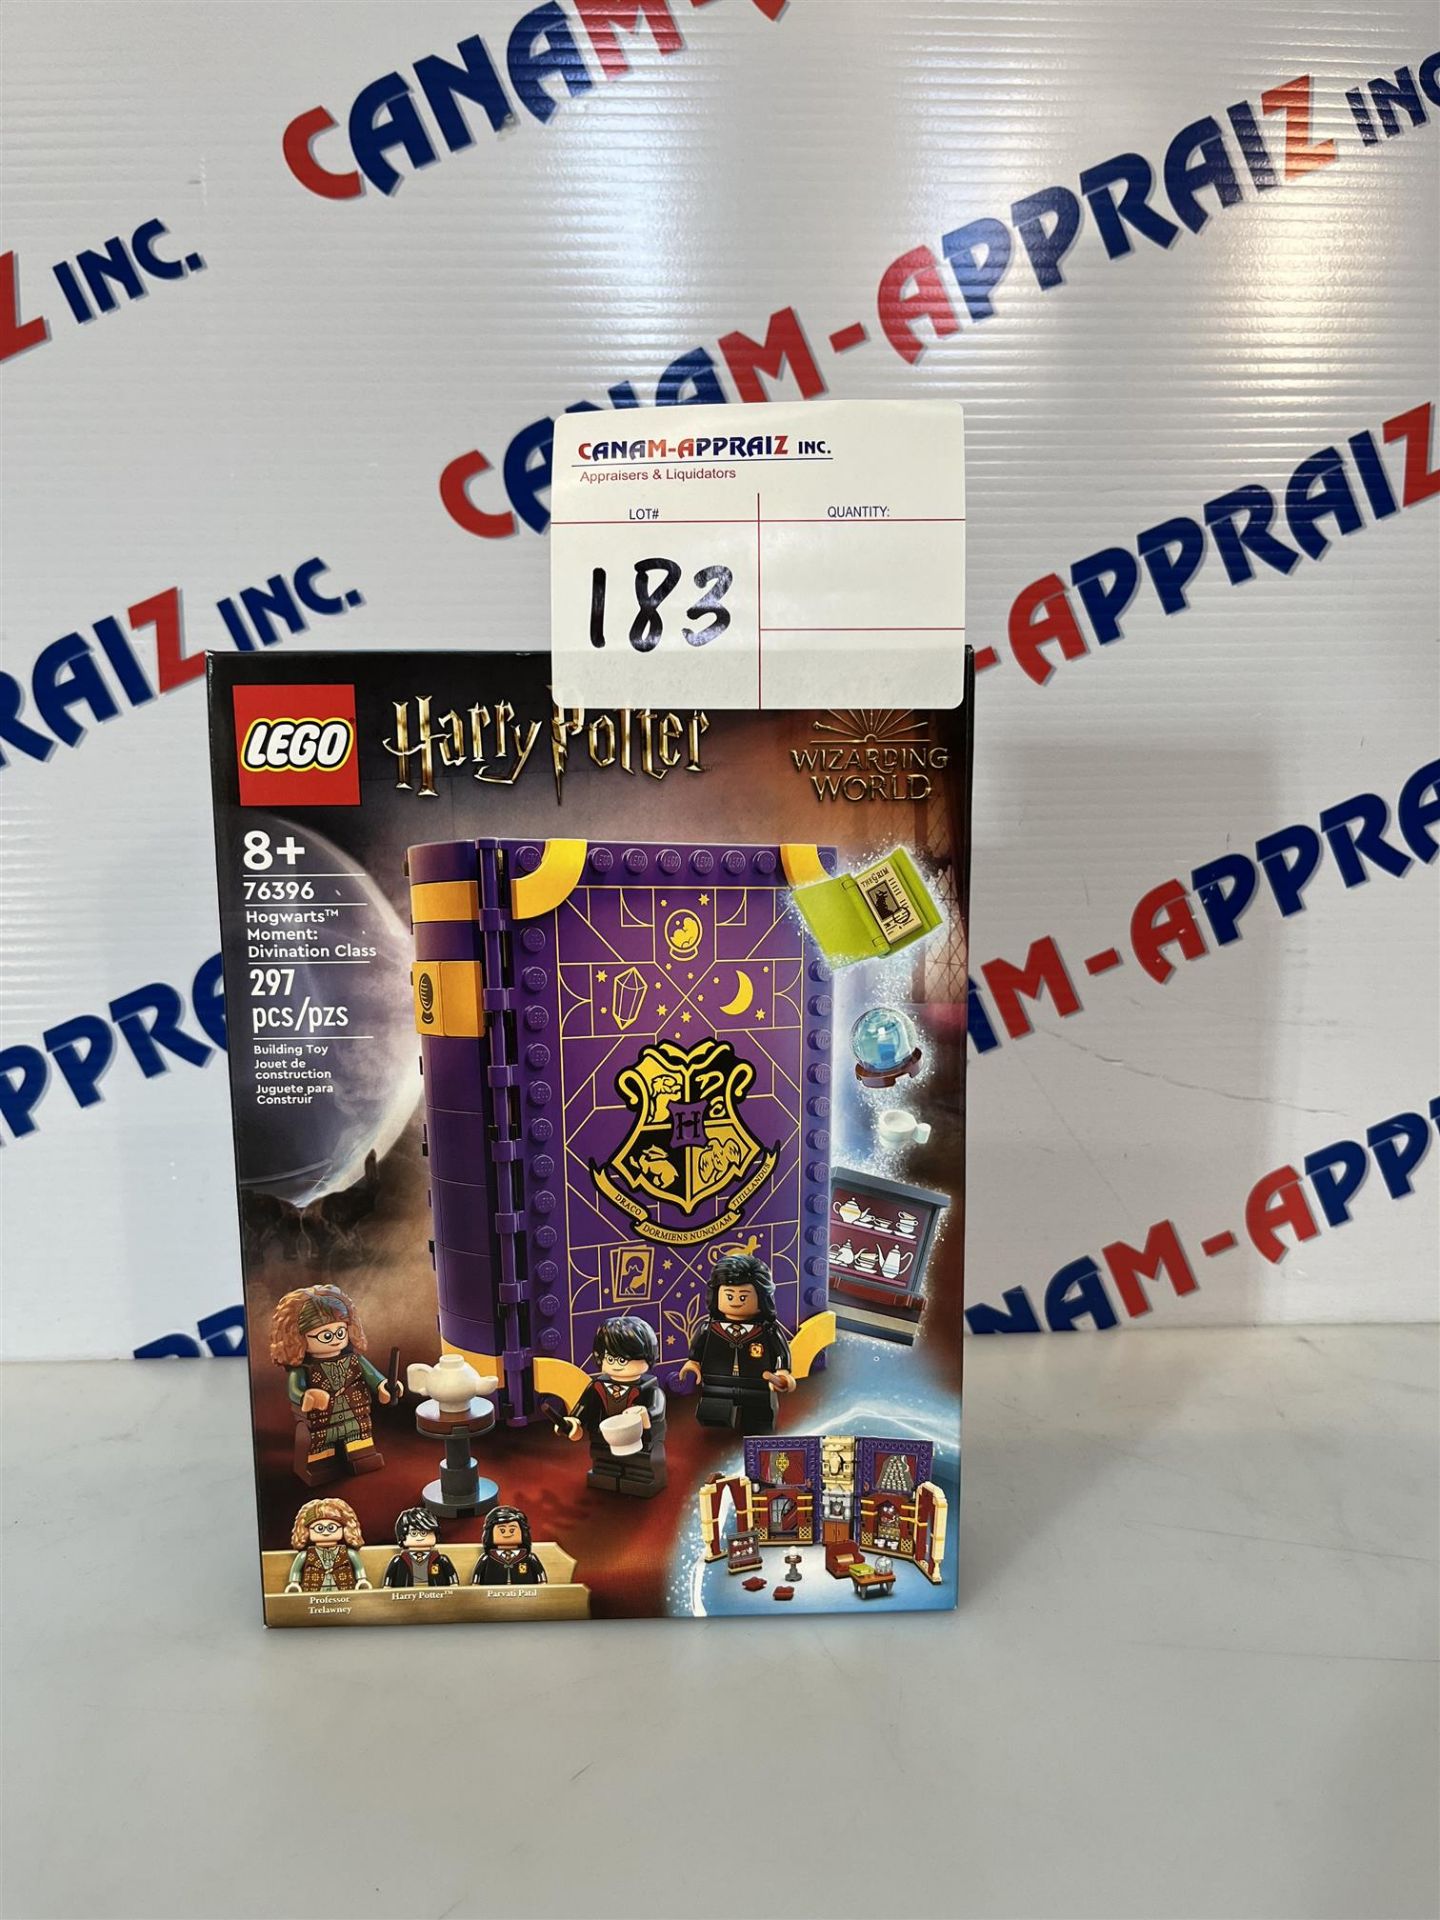 Lego Harry Potter Hogwarts Moment: Divination Class 76396 - Ages 8+ - 297 PCS